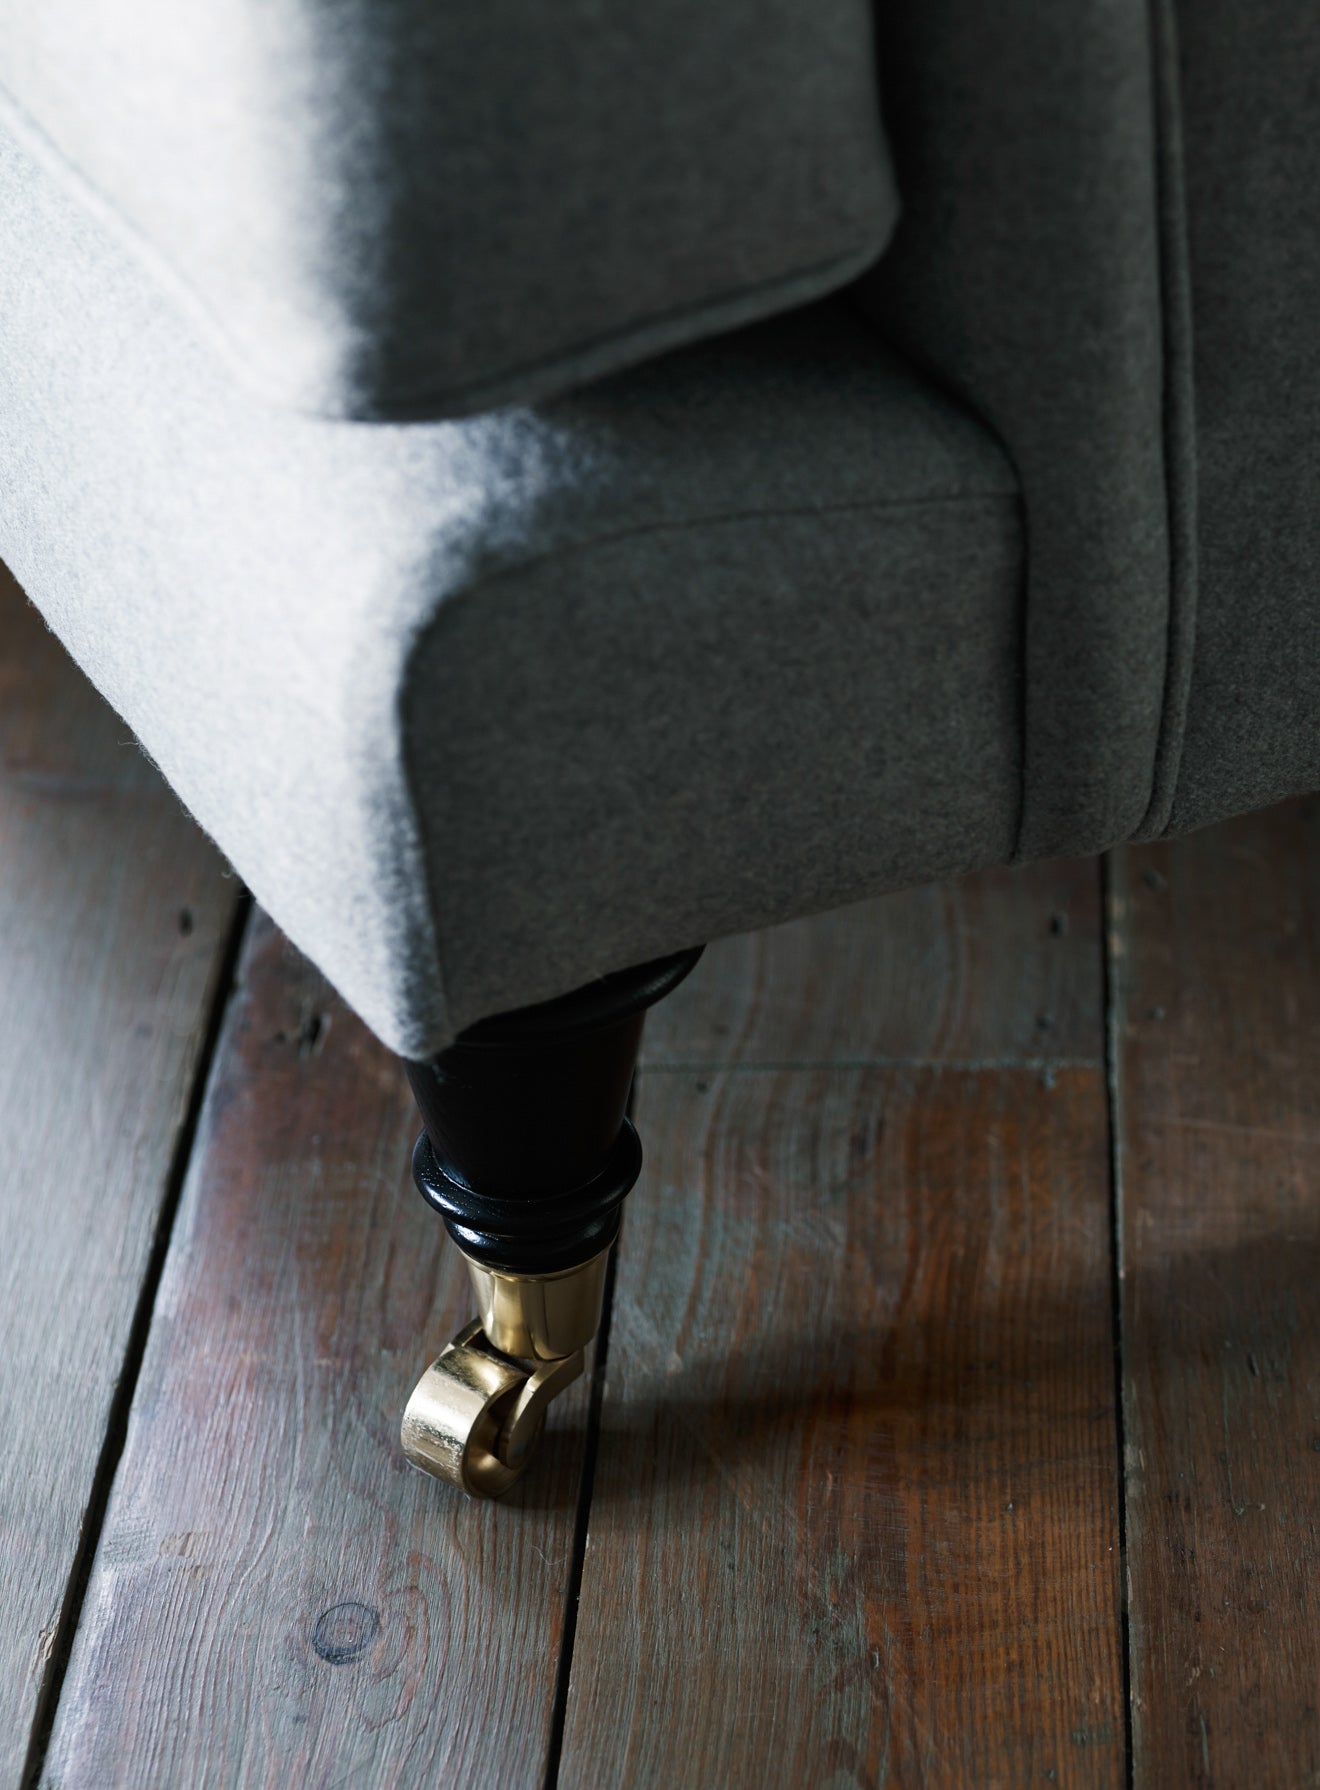 Abington Sofa, Two Seater, Grey Wool